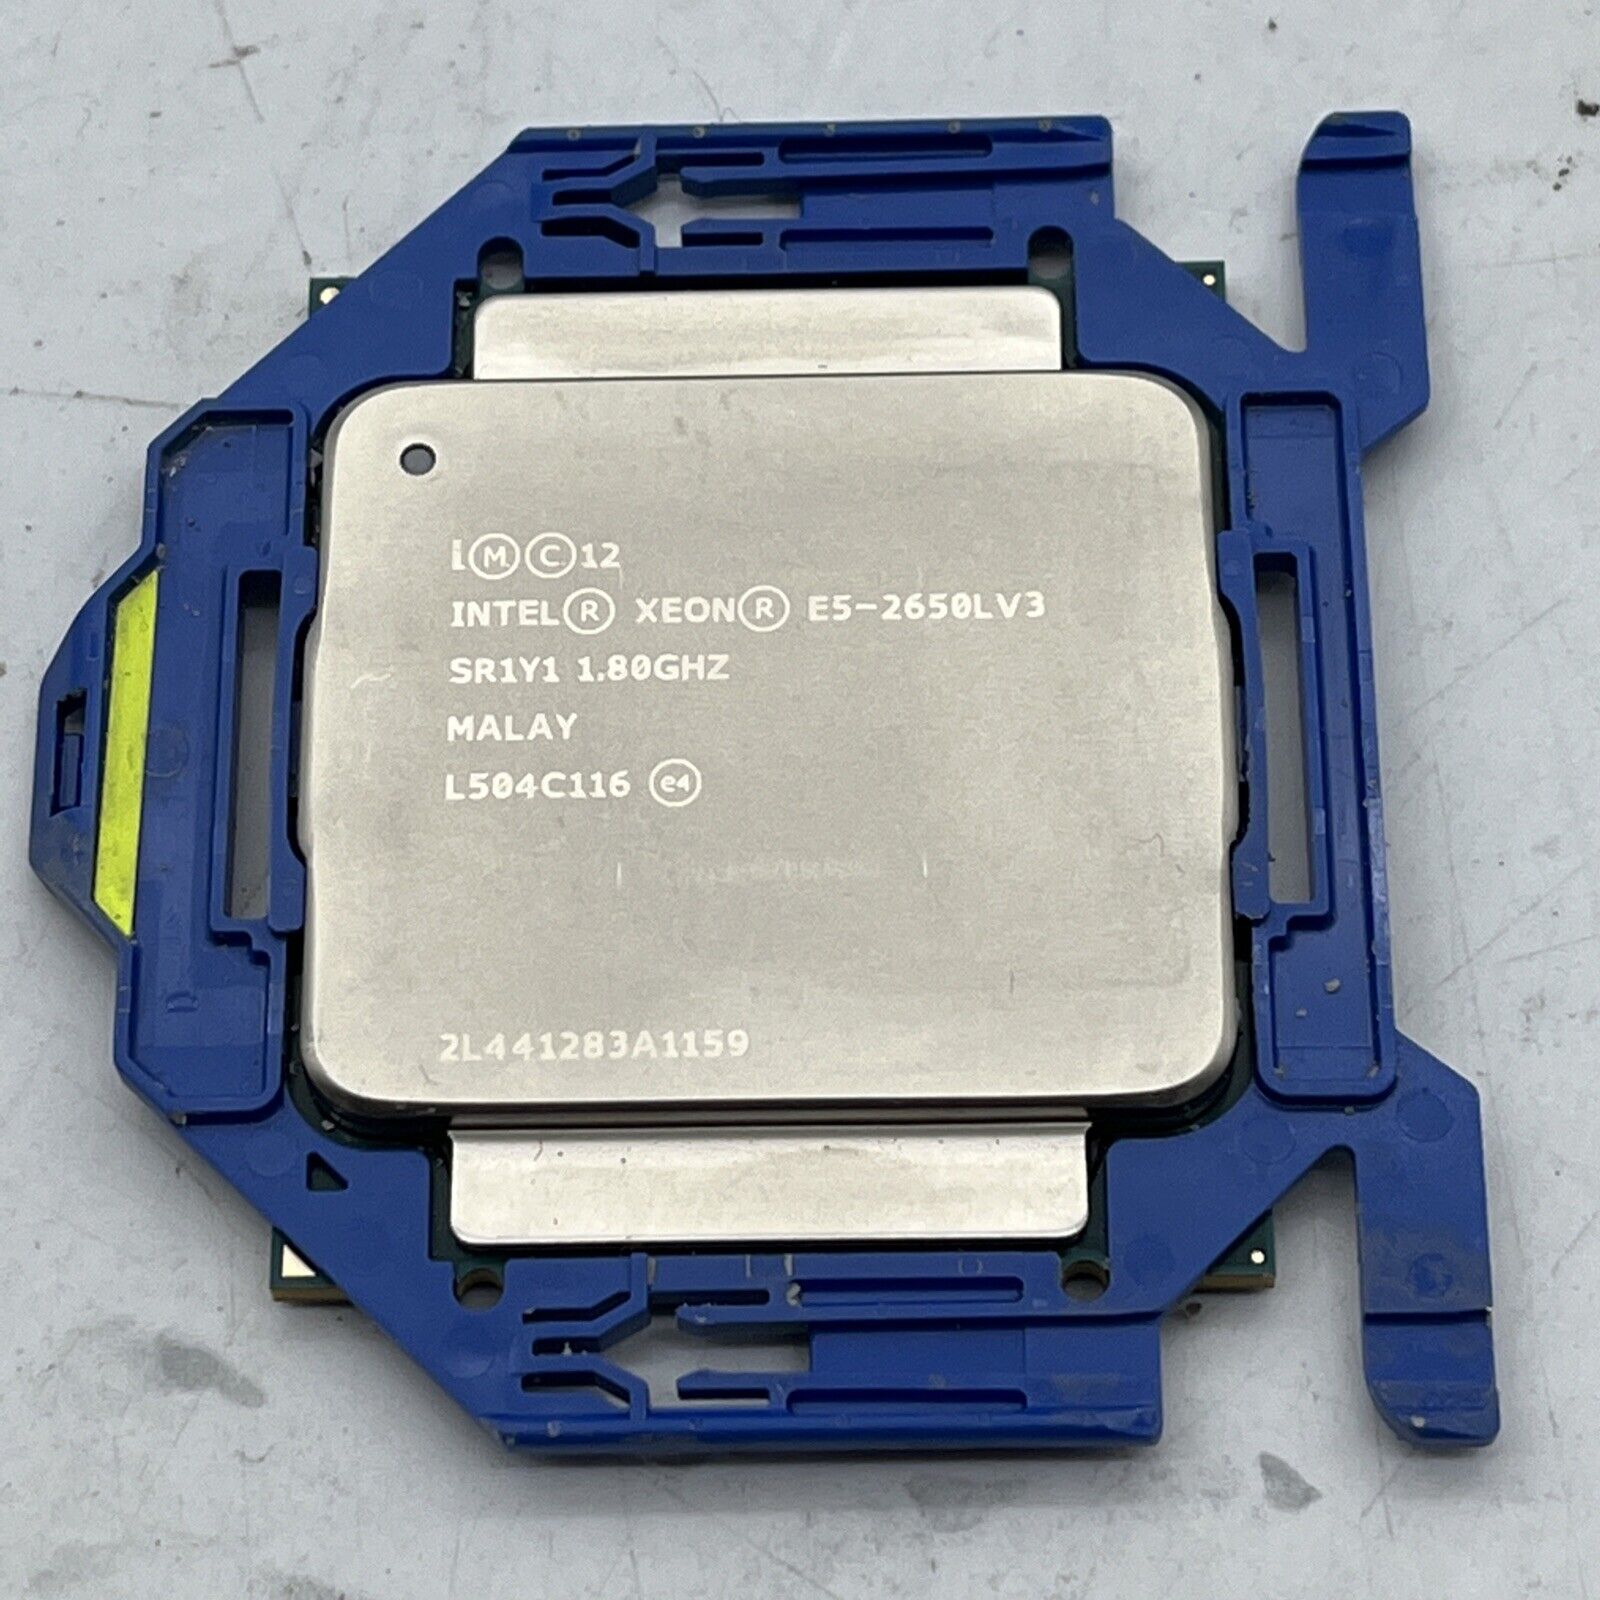 Intel Xeon E5-2650L v3 1.8GHz 30MB 9.6GT/s 12 Core SR1Y1 LGA2011-3 Processor